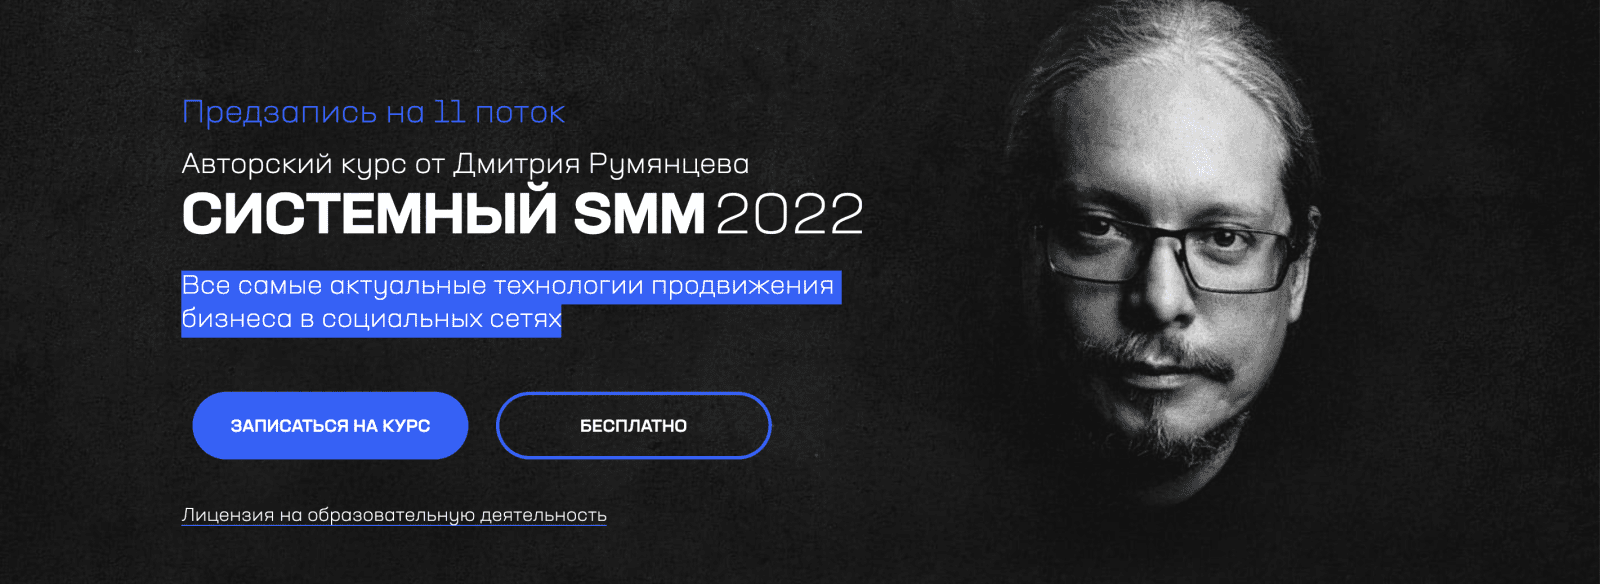 Изображение [Дмитрий Румянцев] Системный SMM 2022 в посте 271255